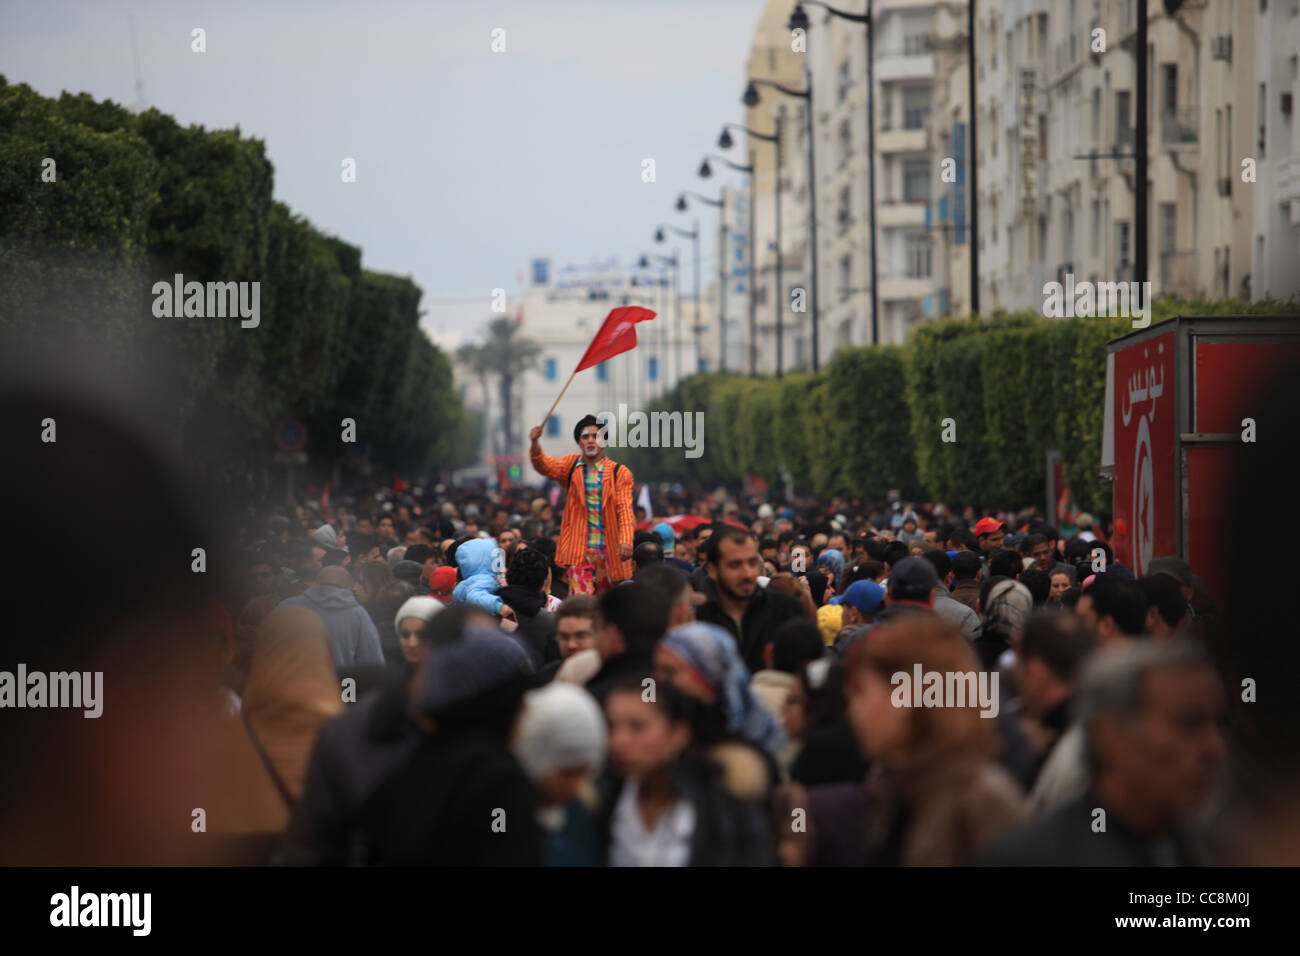 Clown tenant le drapeau tunisien dans le 14 janvier 2012 Célébration de la révolution tunisienne. Banque D'Images